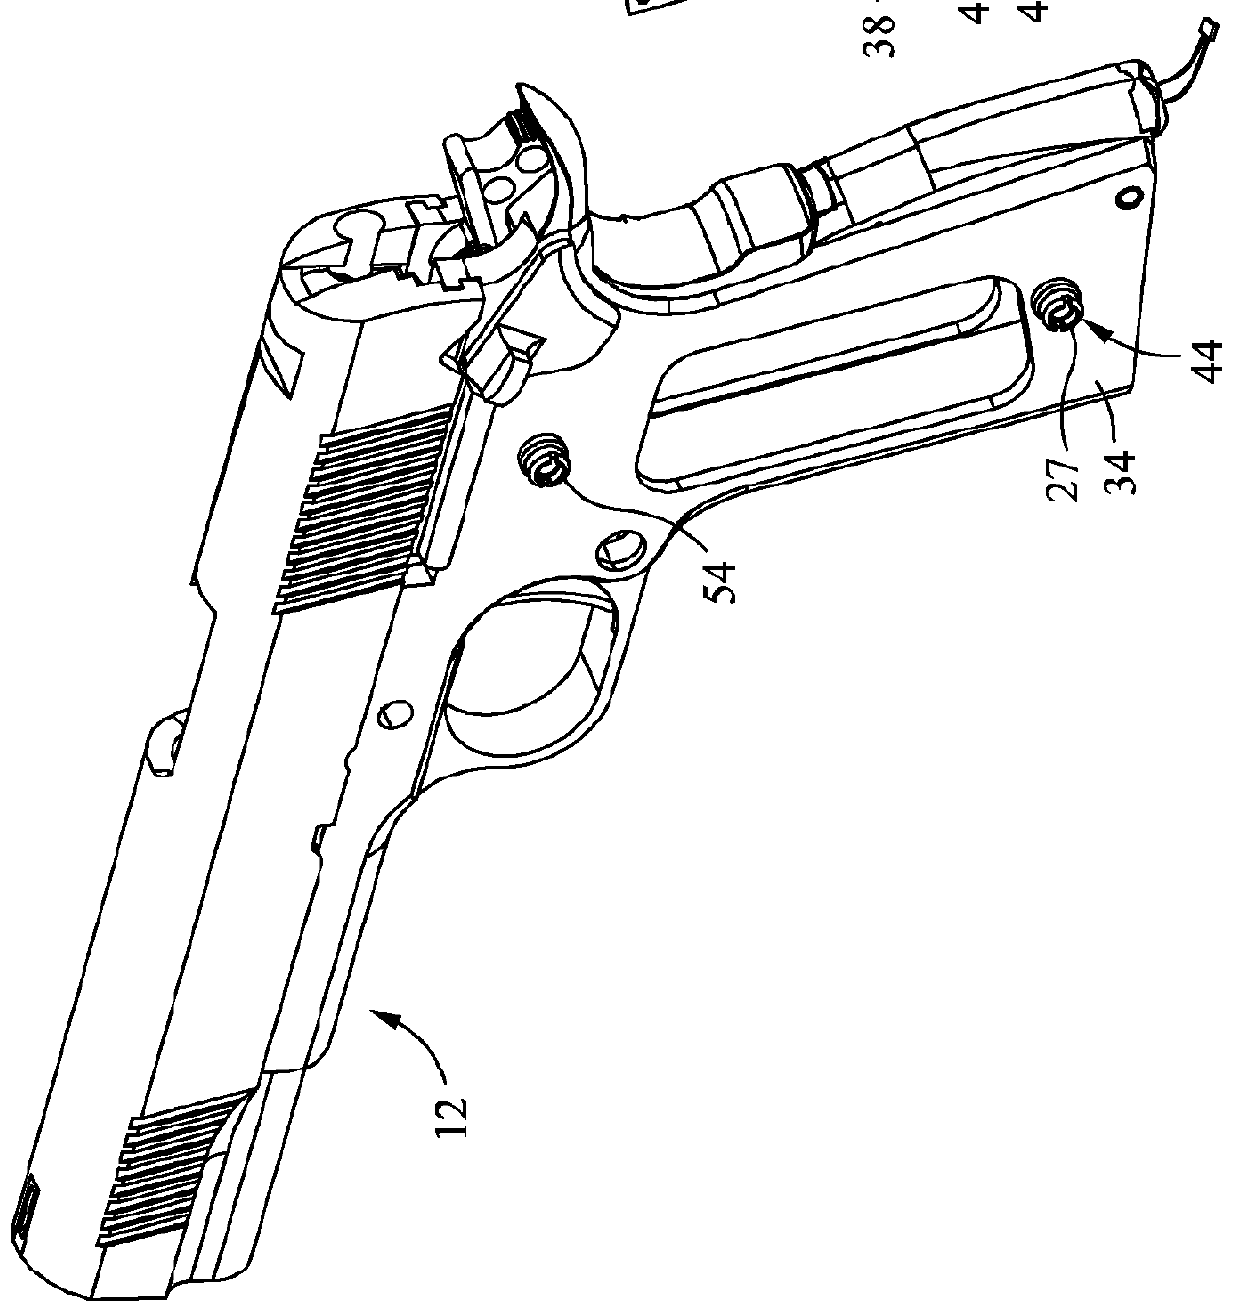 Firearm safety lock